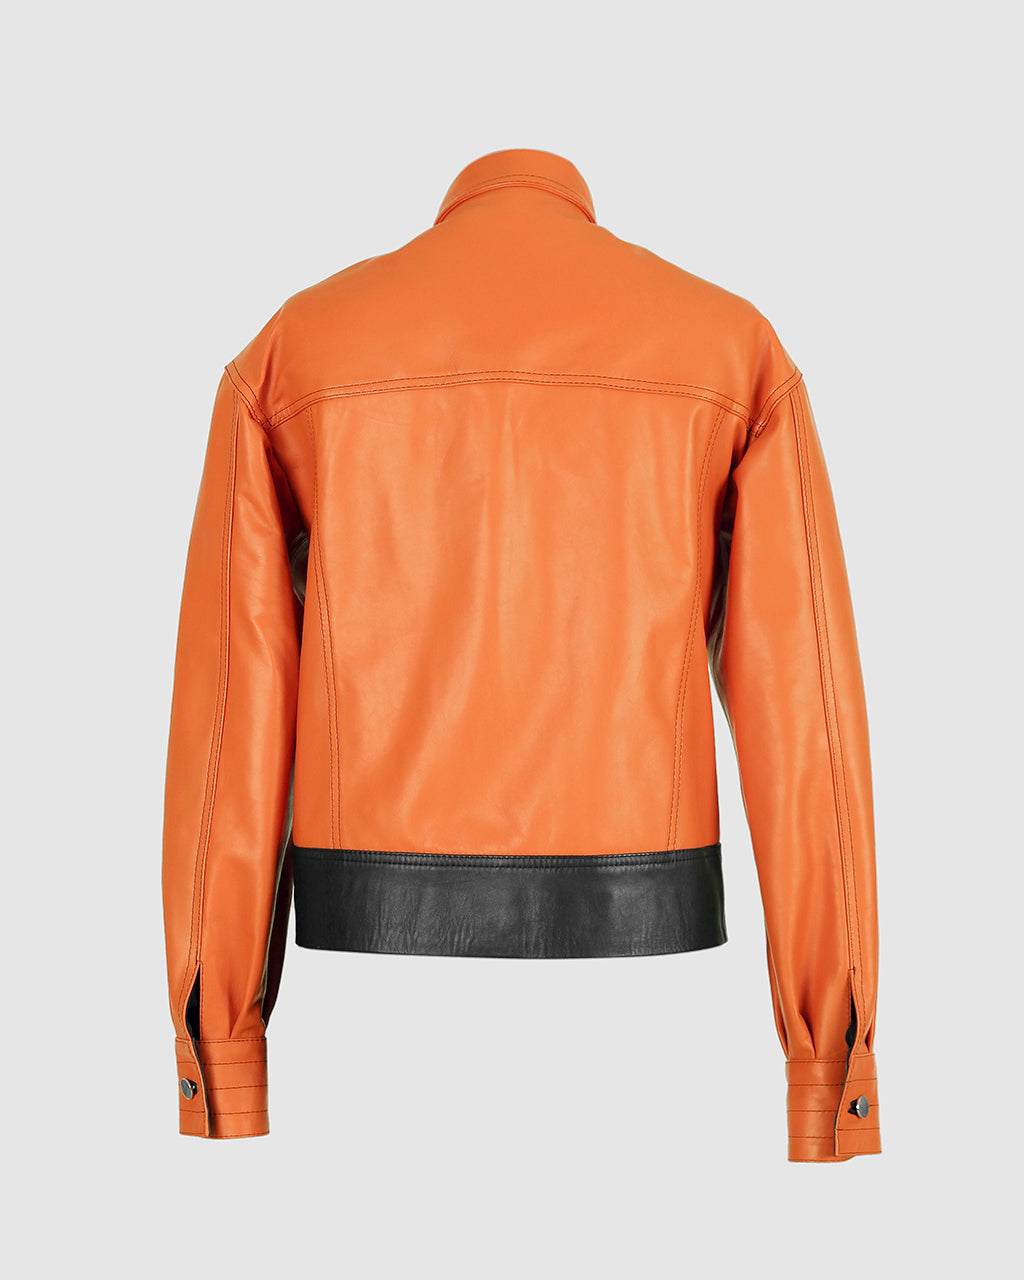 Lennox Leather Jacket Orange